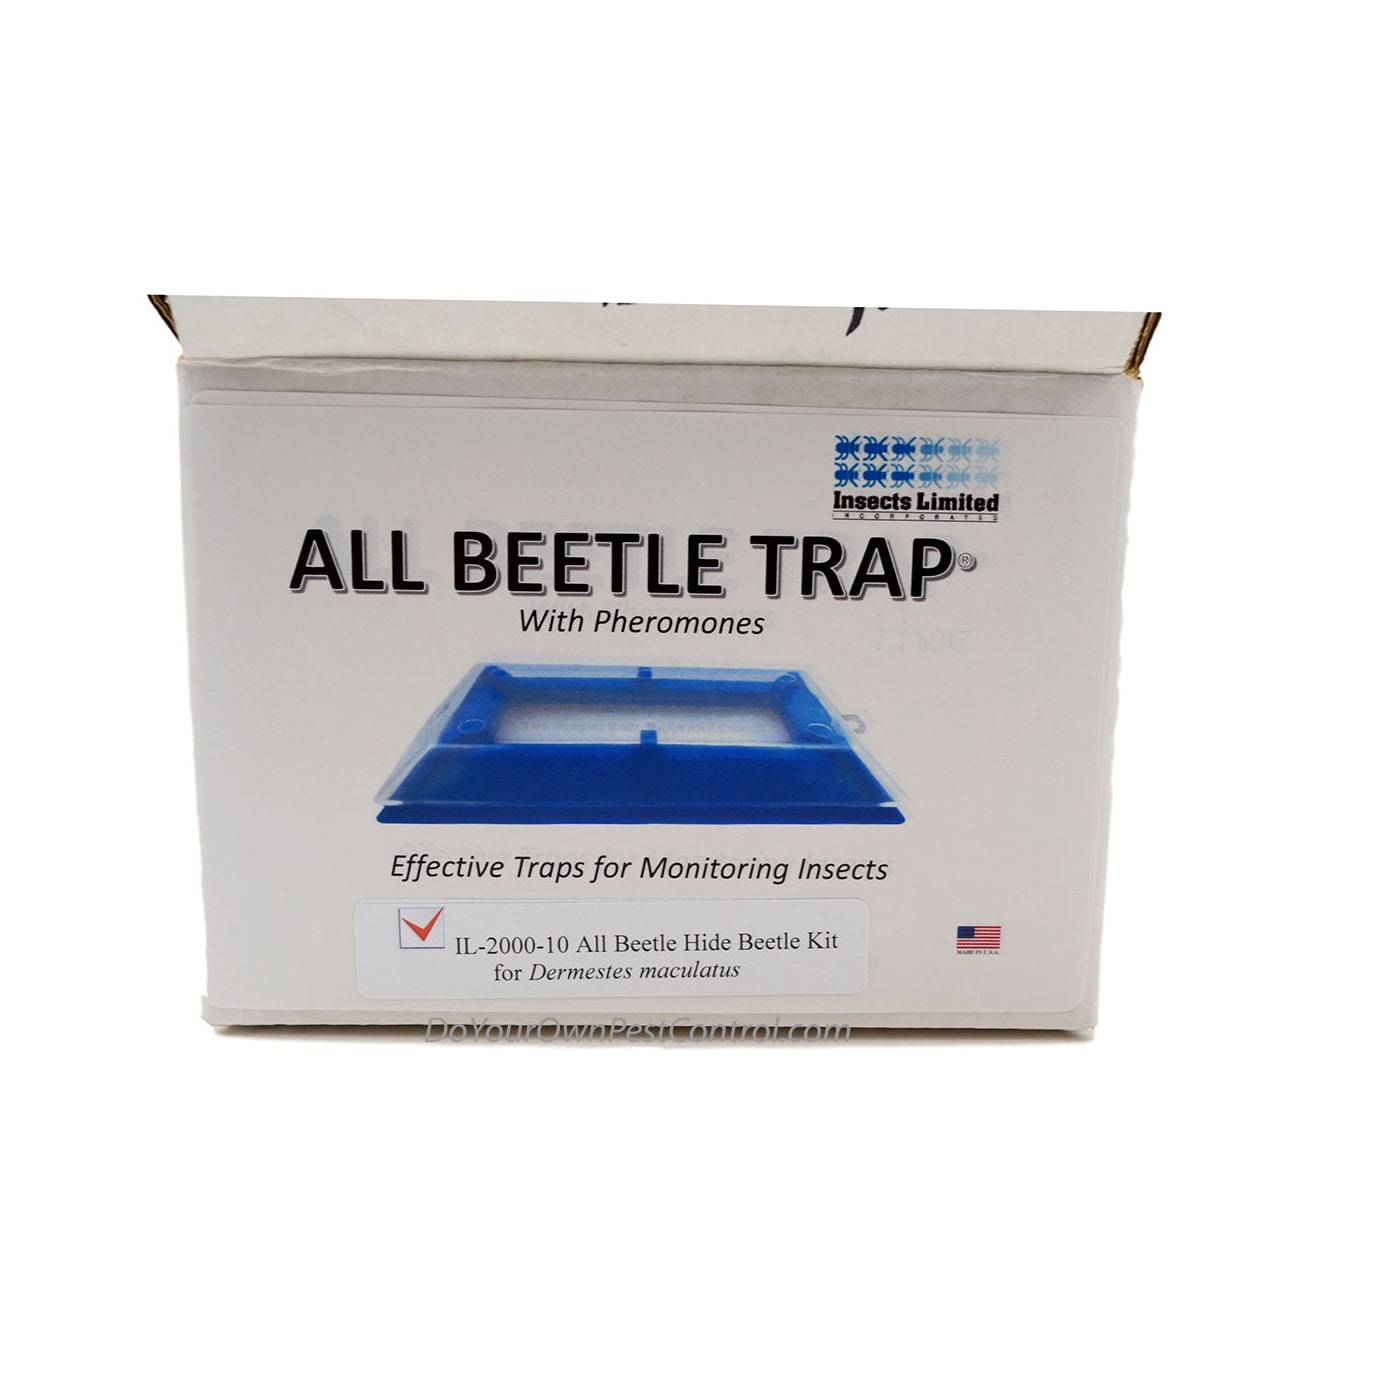 All Beetle Hide Beetle Kit